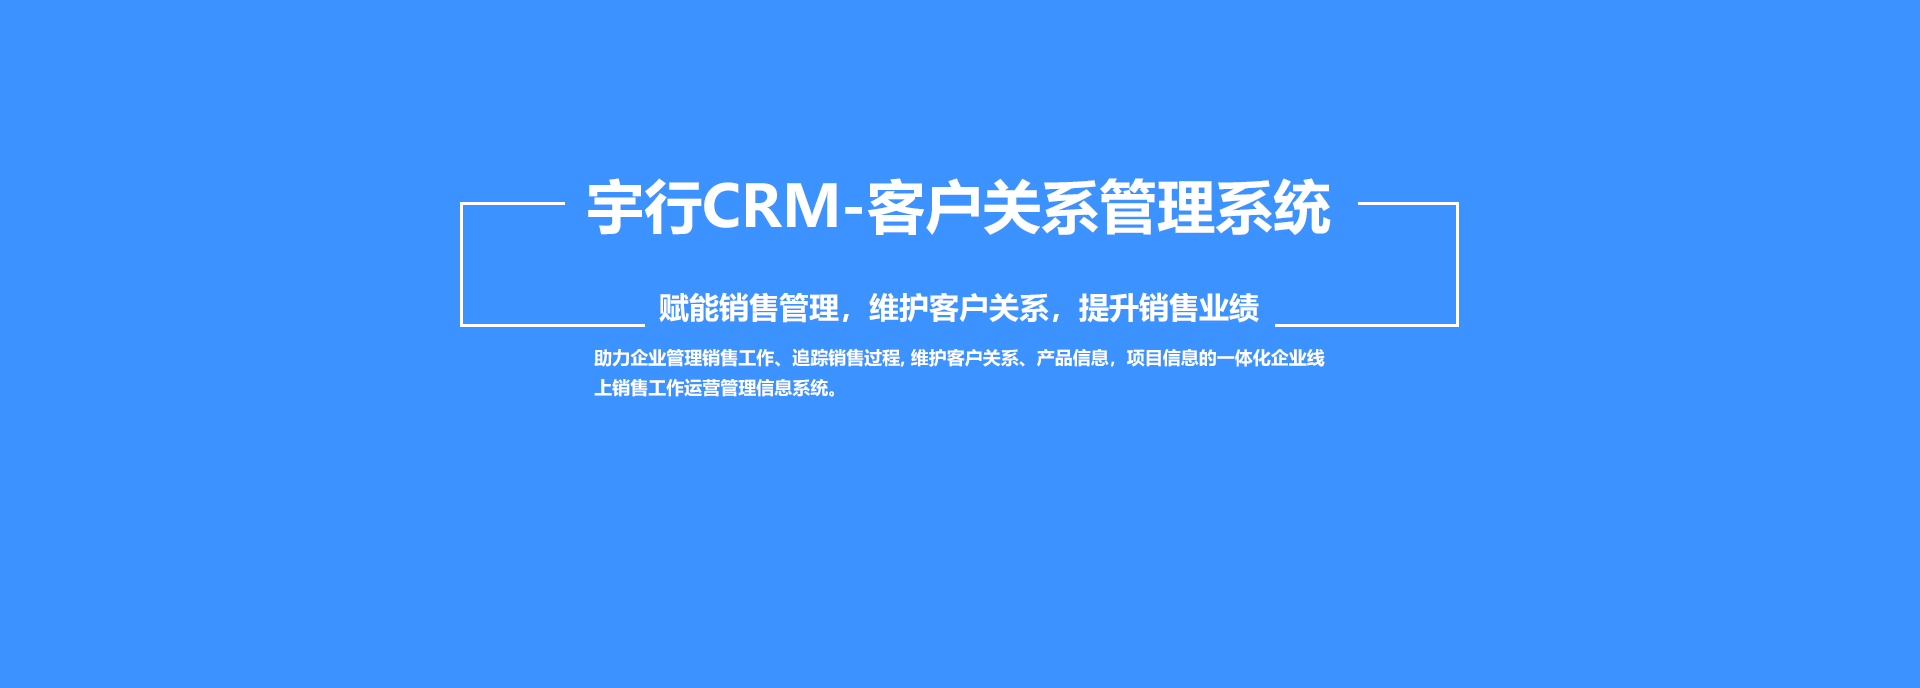 宇行CRM系统-客户关系管理系统